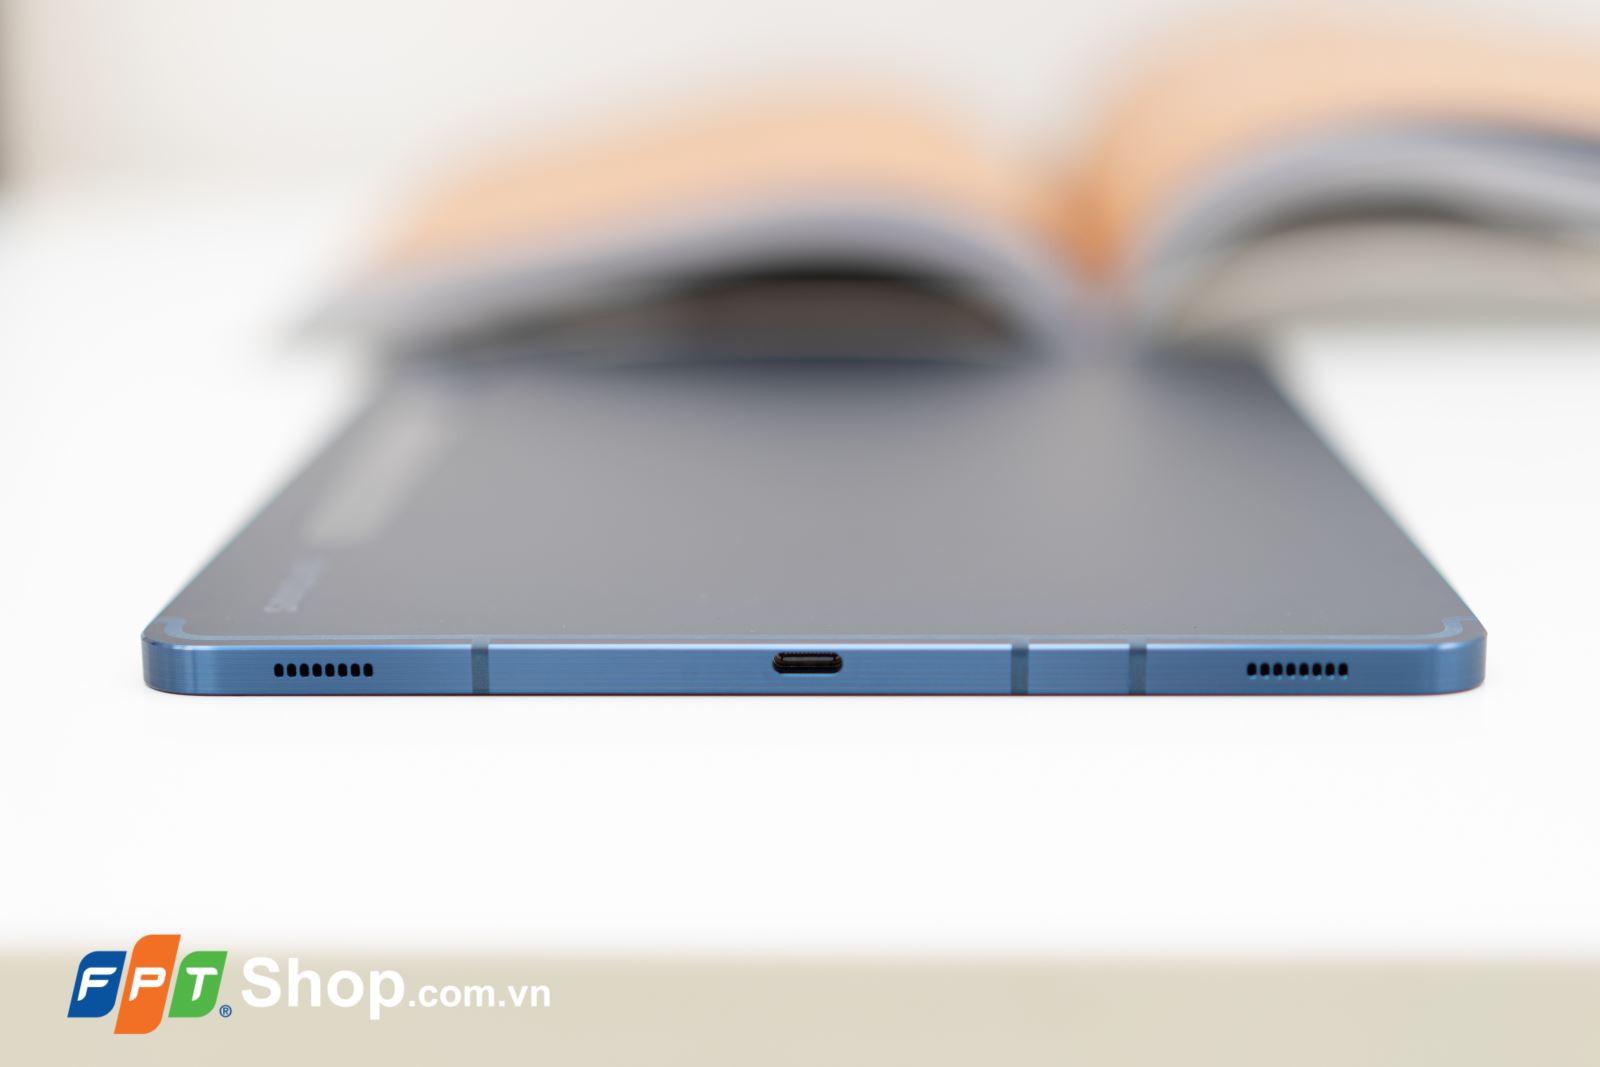 Samsung Galaxy Tab S7/S7+ Xanh Navy – Những chiếc tablet đáng giá đến từng xu 20